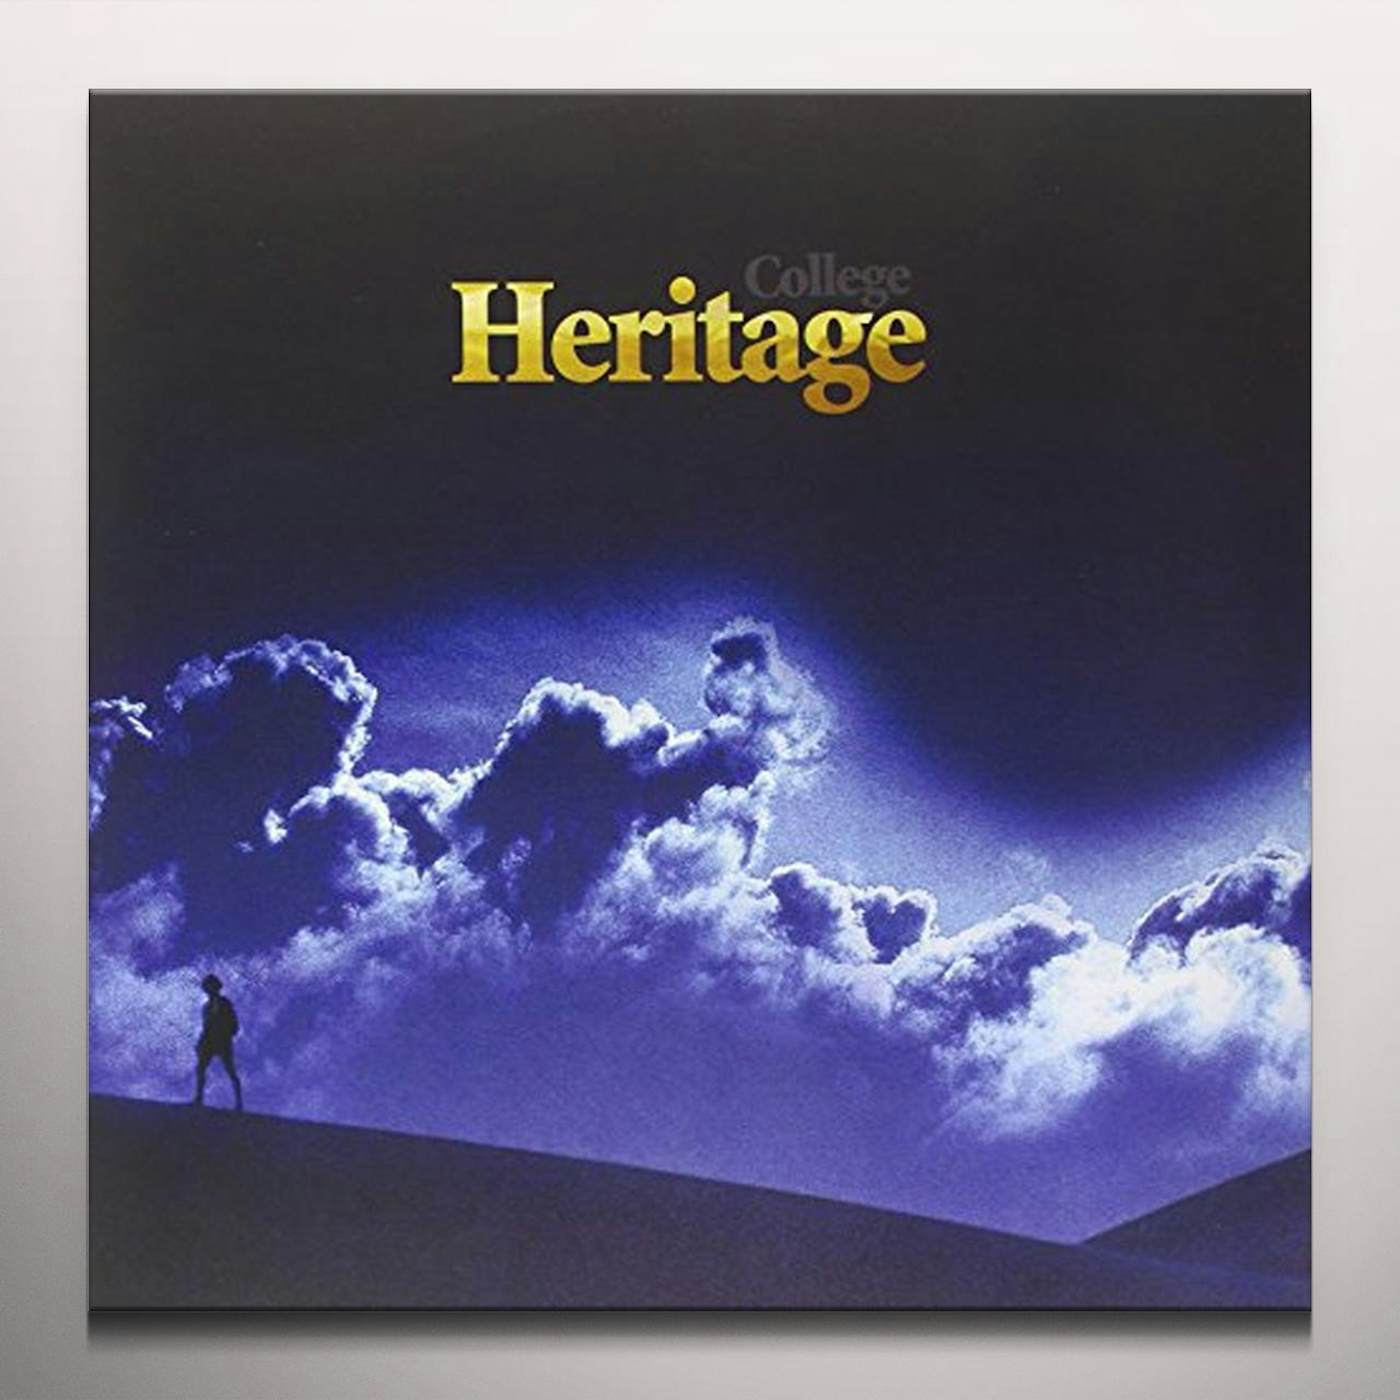 College Heritage Vinyl Record